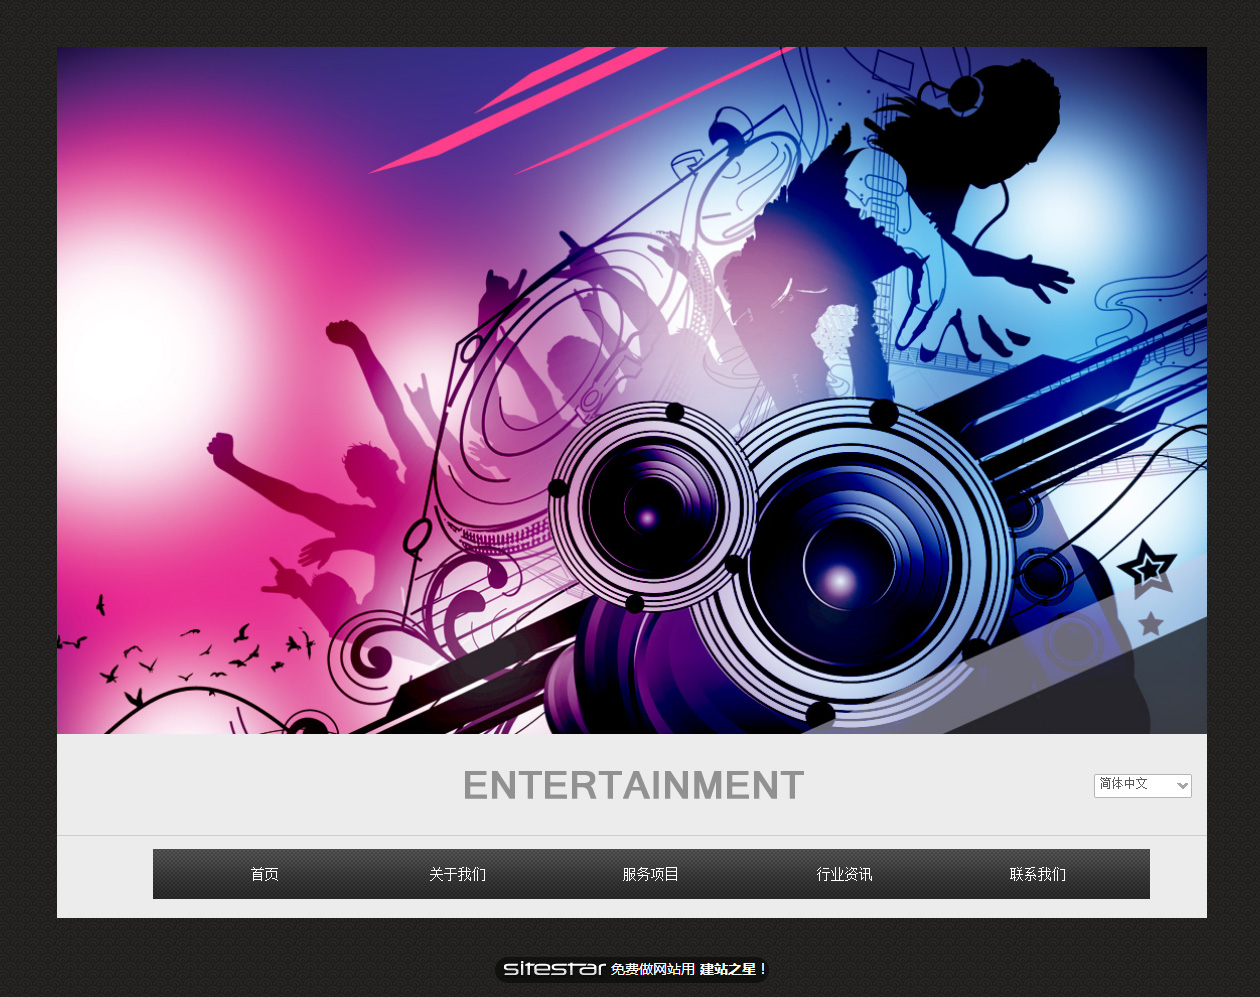 娱乐、休闲网站模板-entertainment-7